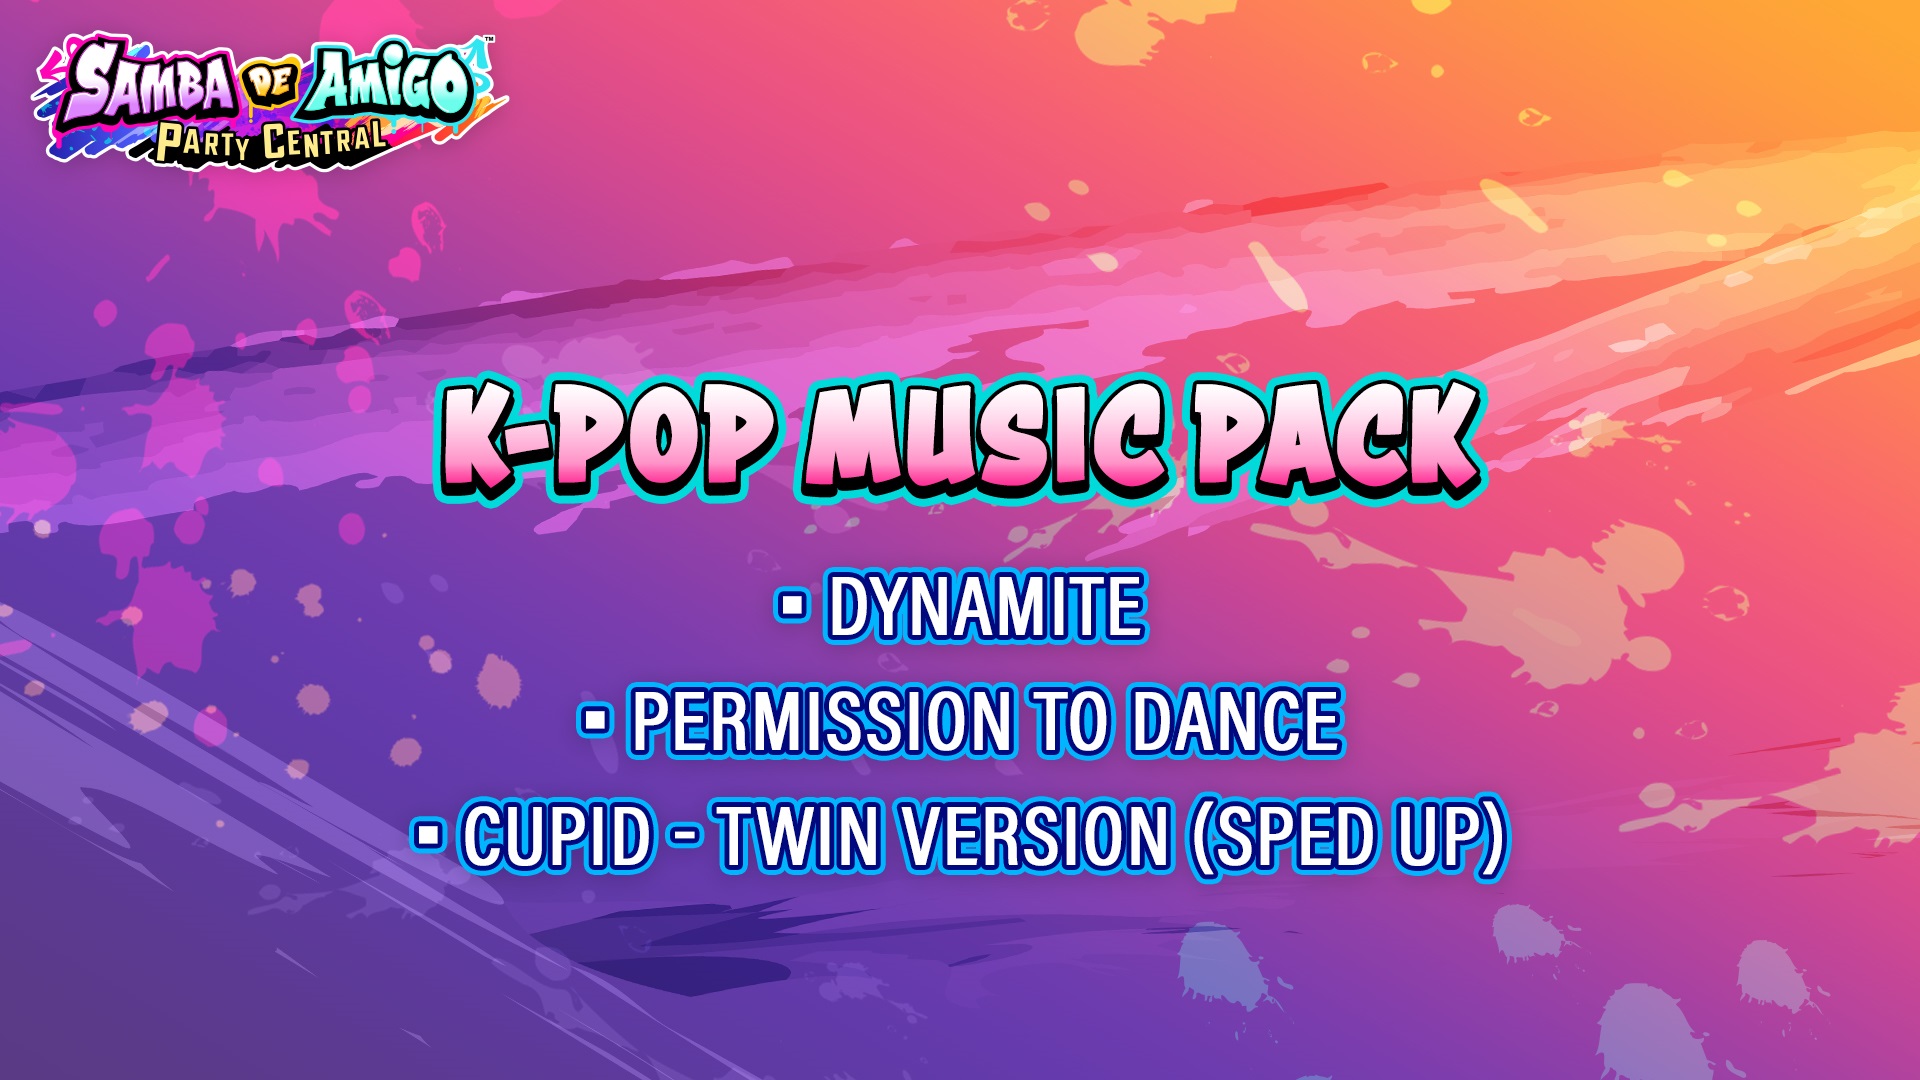 K-Pop Music Pack